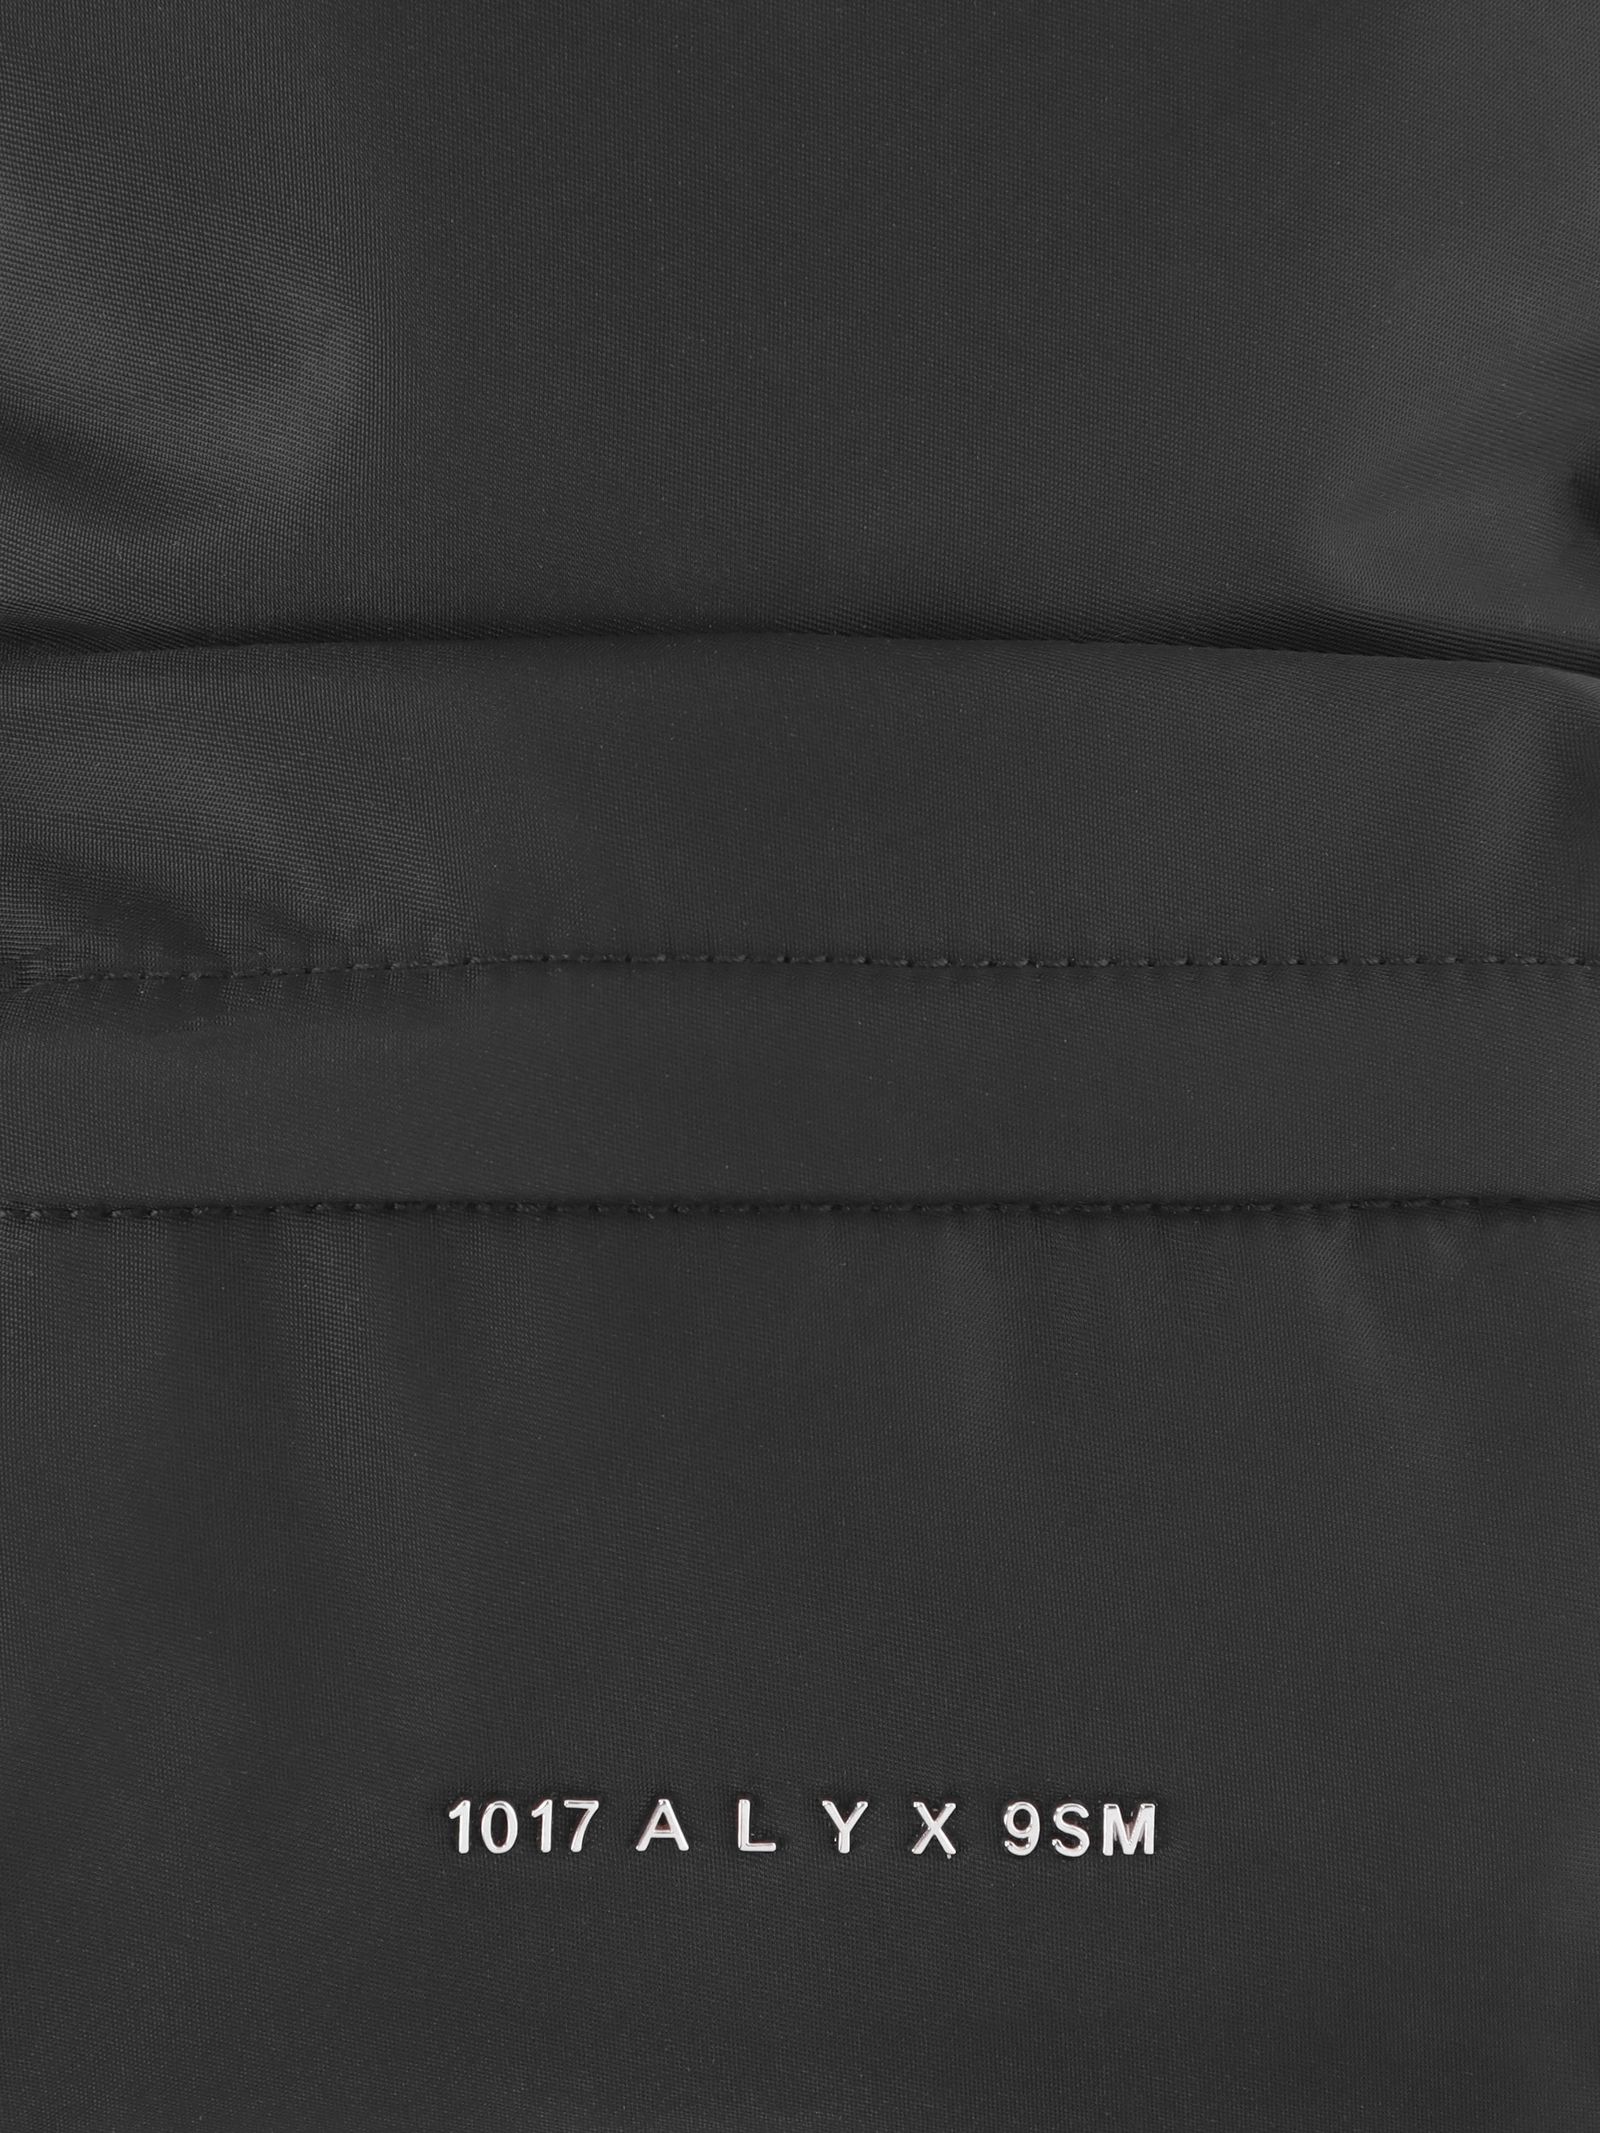 1017 ALYX 9SM - 【23AW】ローラーコースターバックル ボディー バッグ 